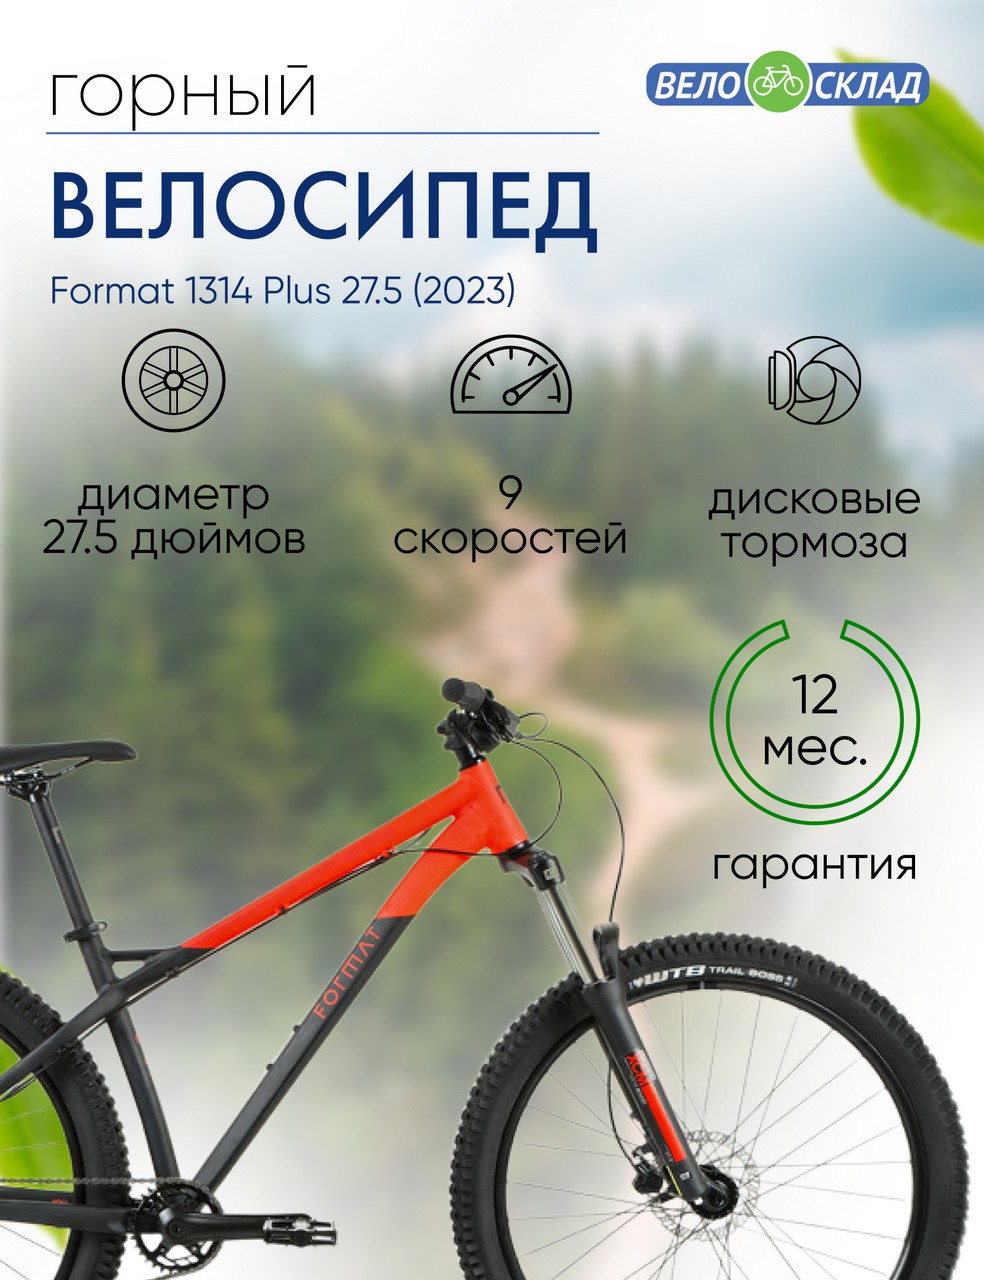 Горный велосипед Format 1314 Plus 27.5, год 2023, цвет Черный-Красный, ростовка 17